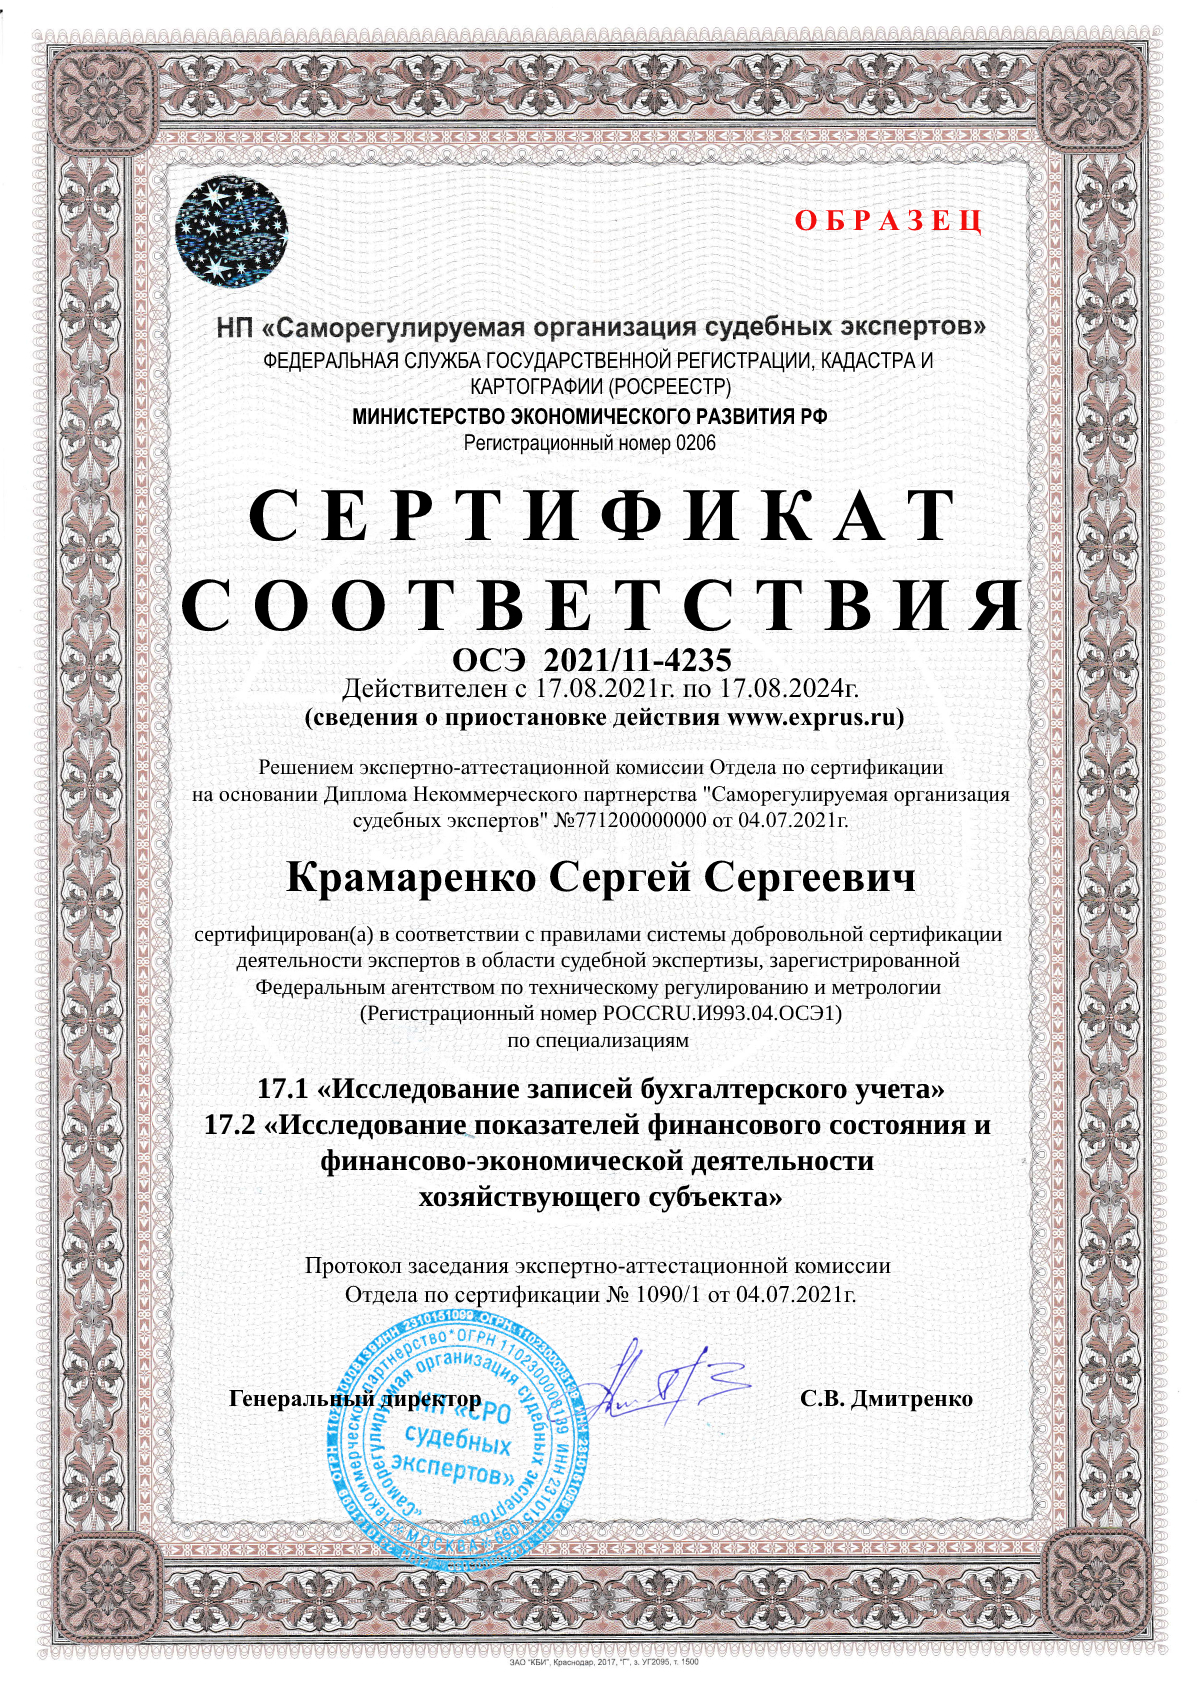 Сертификат соответствия компетентности эксперта по заявленным экспертным специализациям (по всем специализациям экспертной группы) Финансово-экономическая и бухгалтерская экспертиза